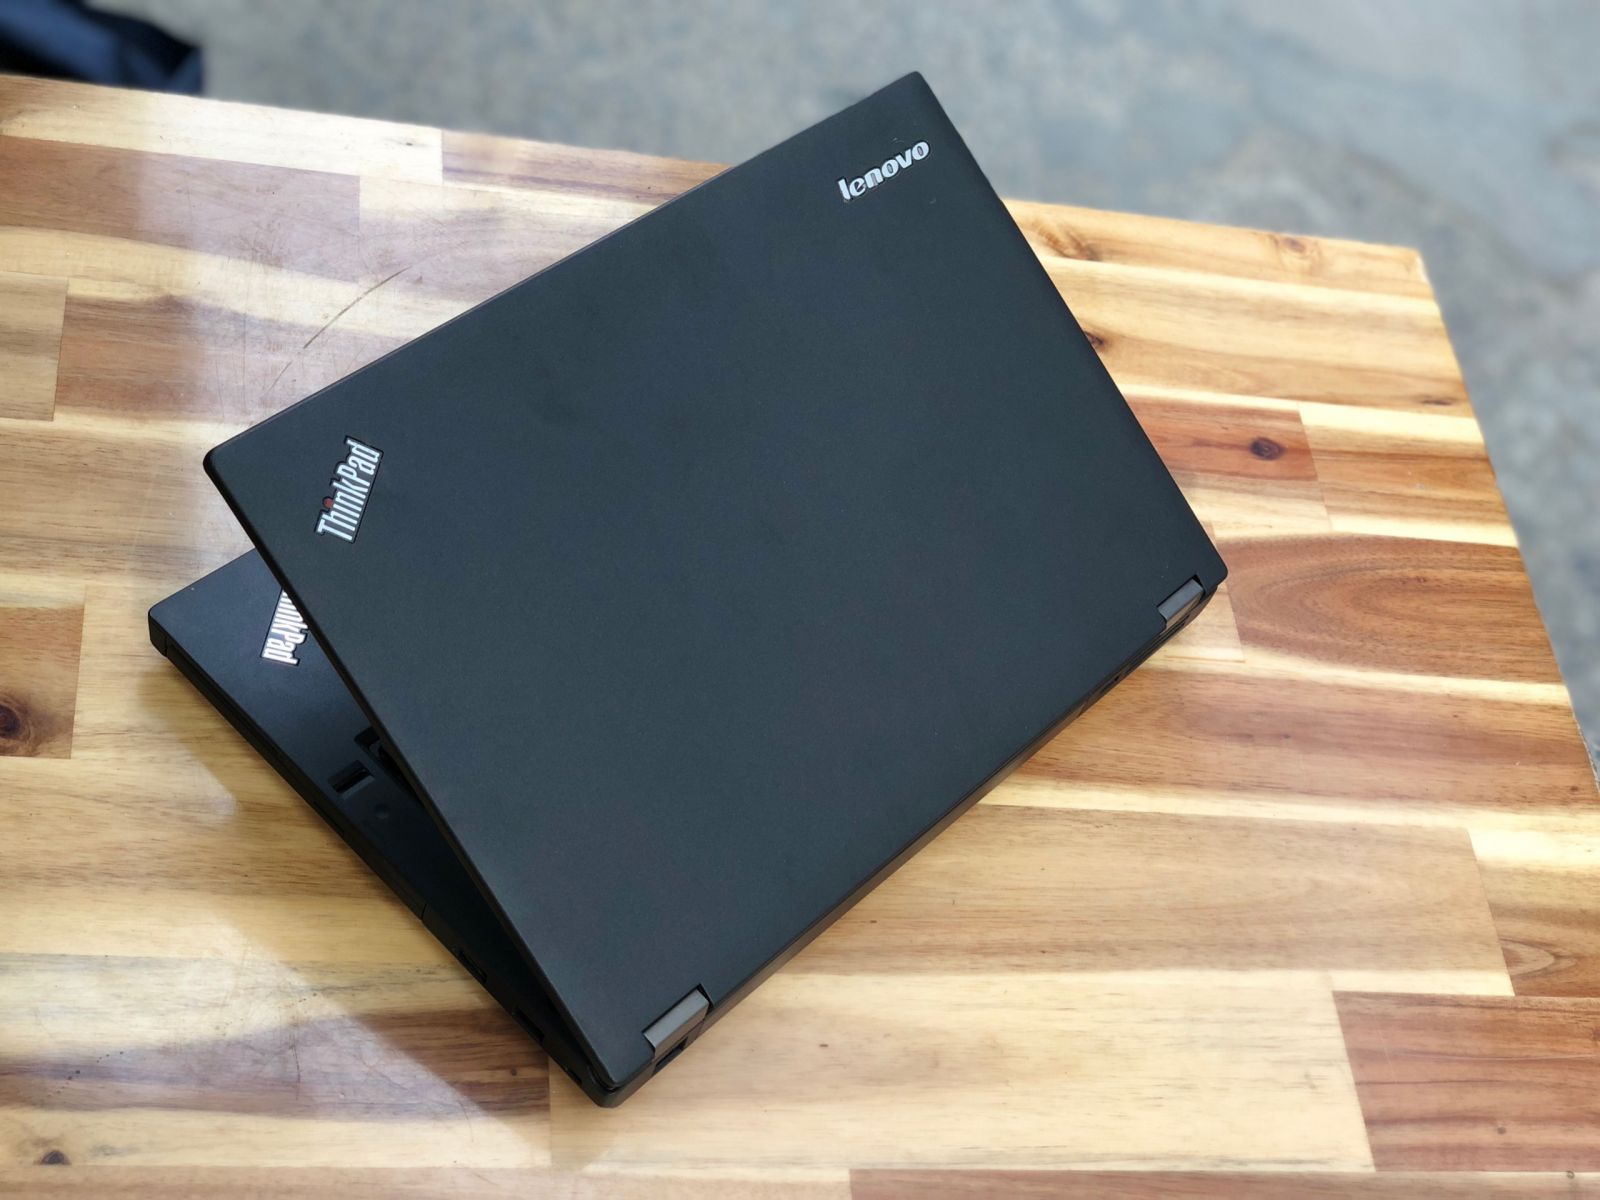 Laptop Lenovo Thinkpad T440P, i7 4600M 8G SSD128 Vga 2G Đèn Phím Finger Đẹp Keng Zin 100% Giá rẻ1